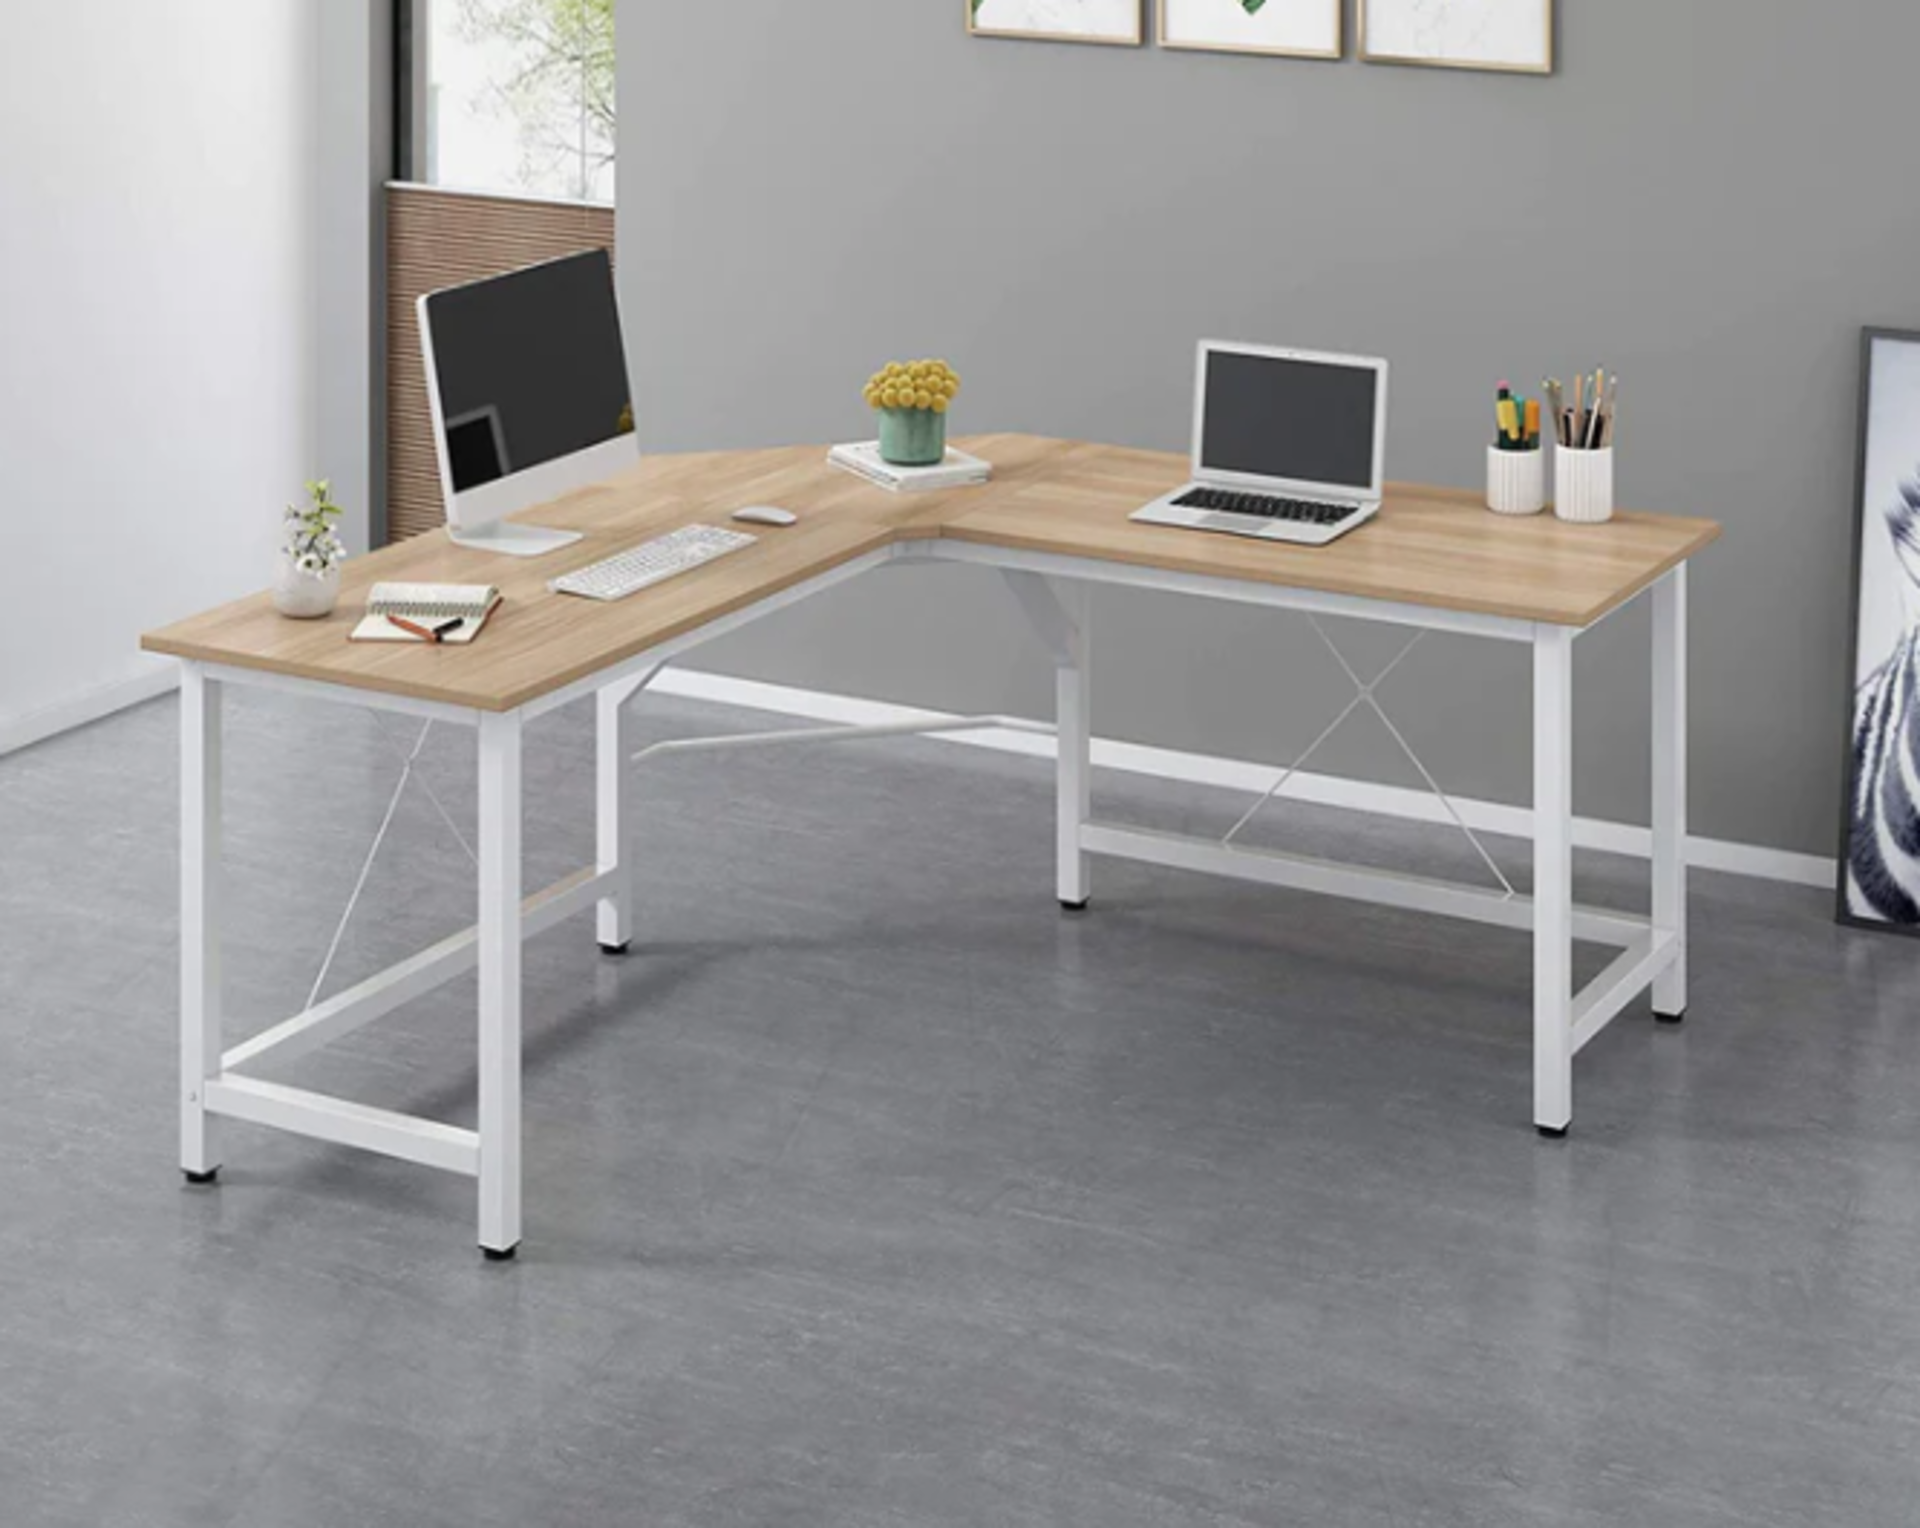 Munich L-Shaped Corner Desk in White. Rrp £246.99. Size: W 150 cm x D 150 cm x H 73 cm.